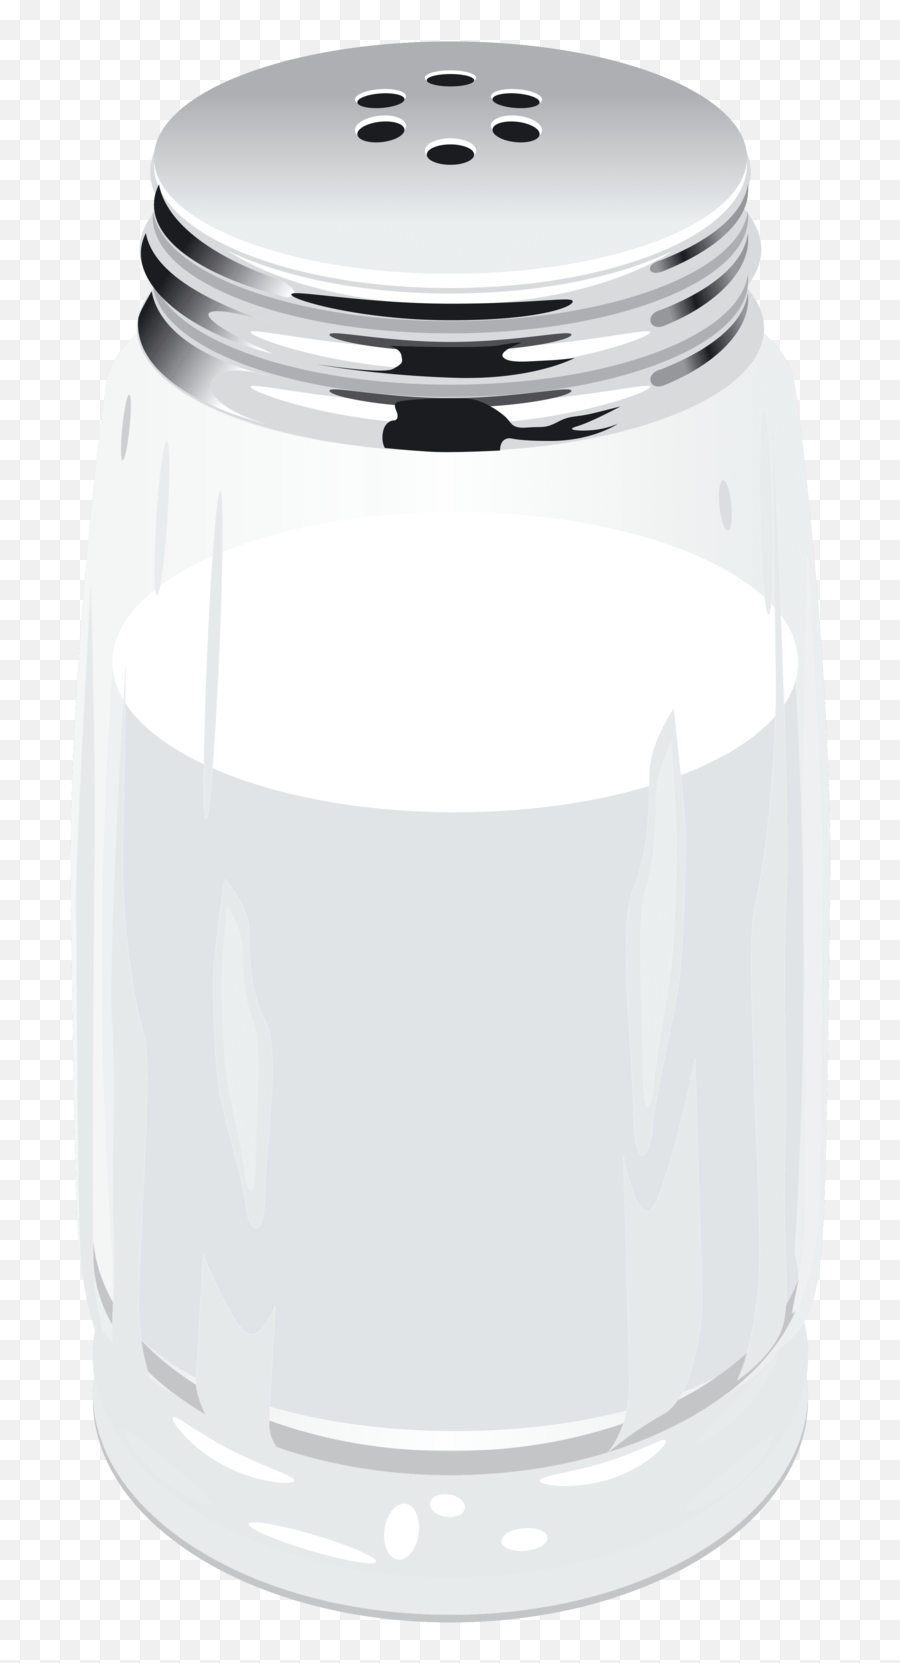 Download Free Png Salt - Salt Shaker No Background,Salt Shaker Transparent Background